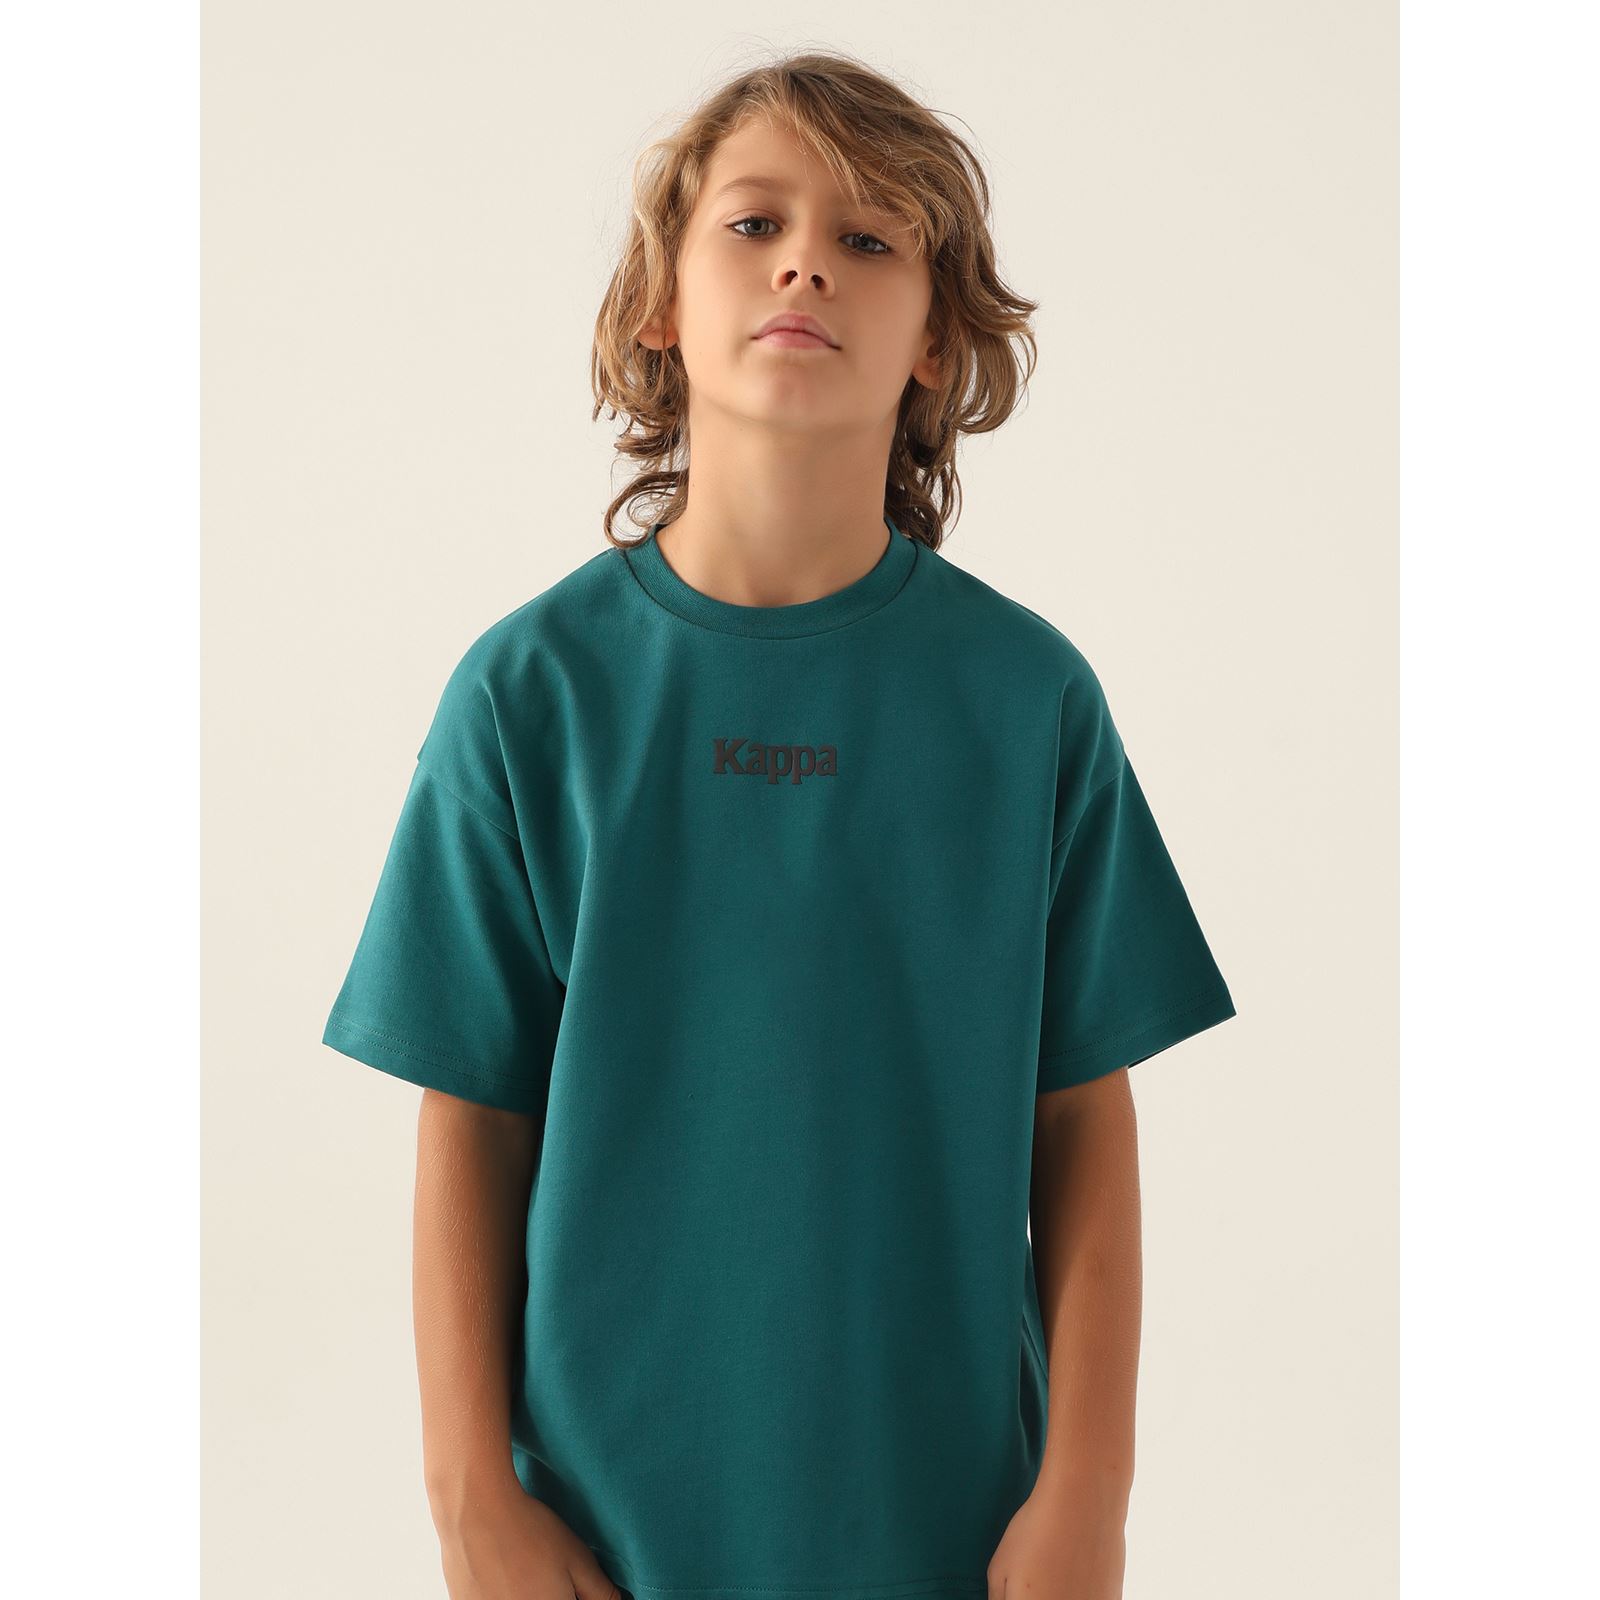 Kappa Erkek Çocuk Tişört 5-15 Yaş Koyu Yeşil